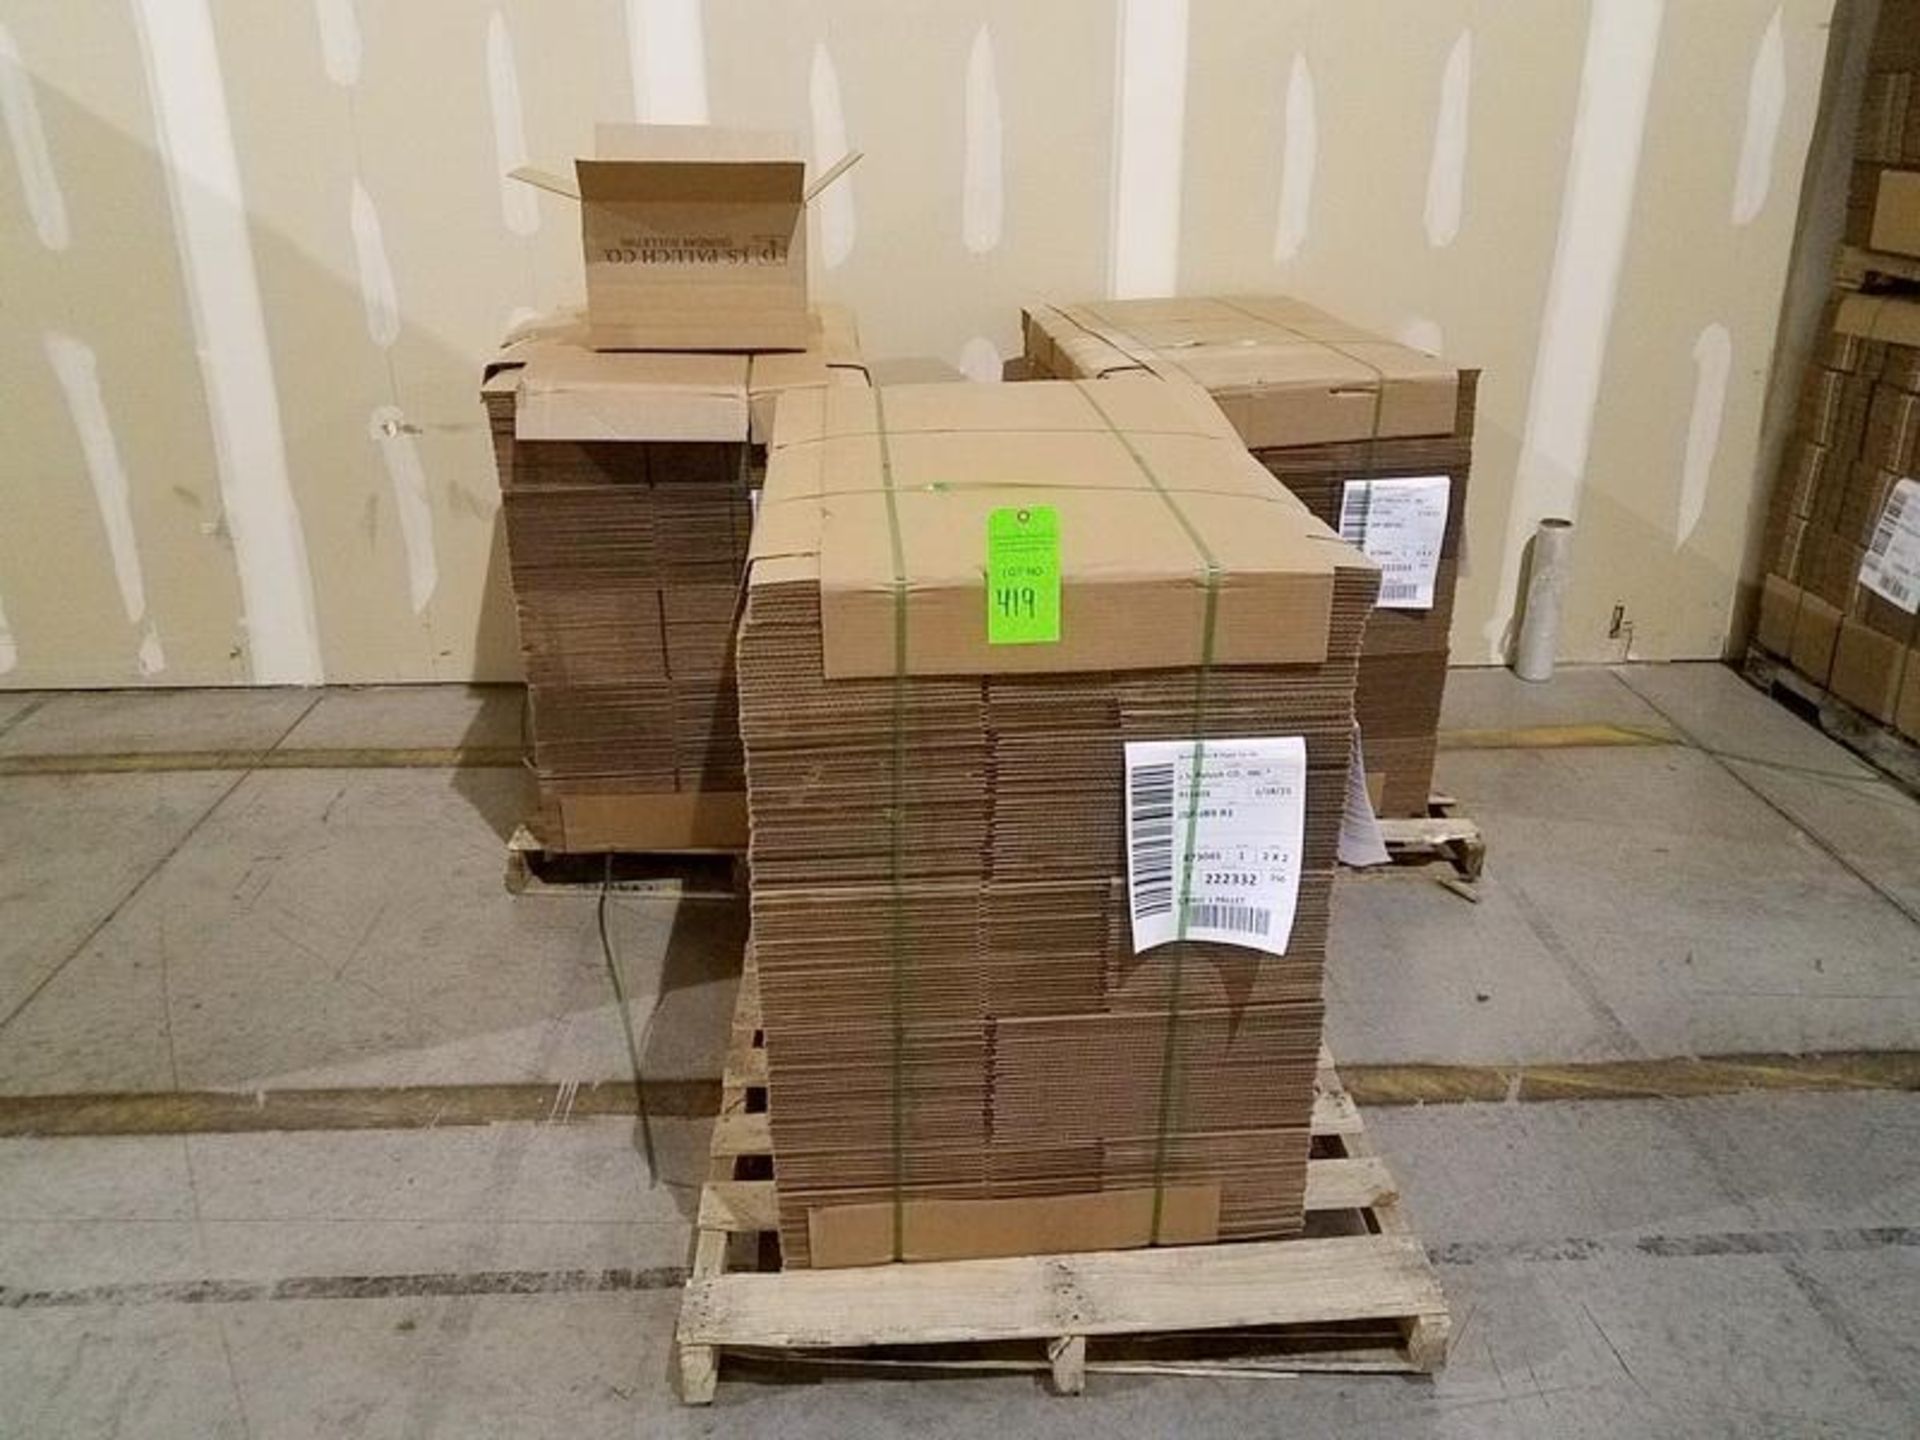 Lot JSP-JB9 R1 Corrugated Boxes, 17.25" x 11.5" x 11.5" Approx.